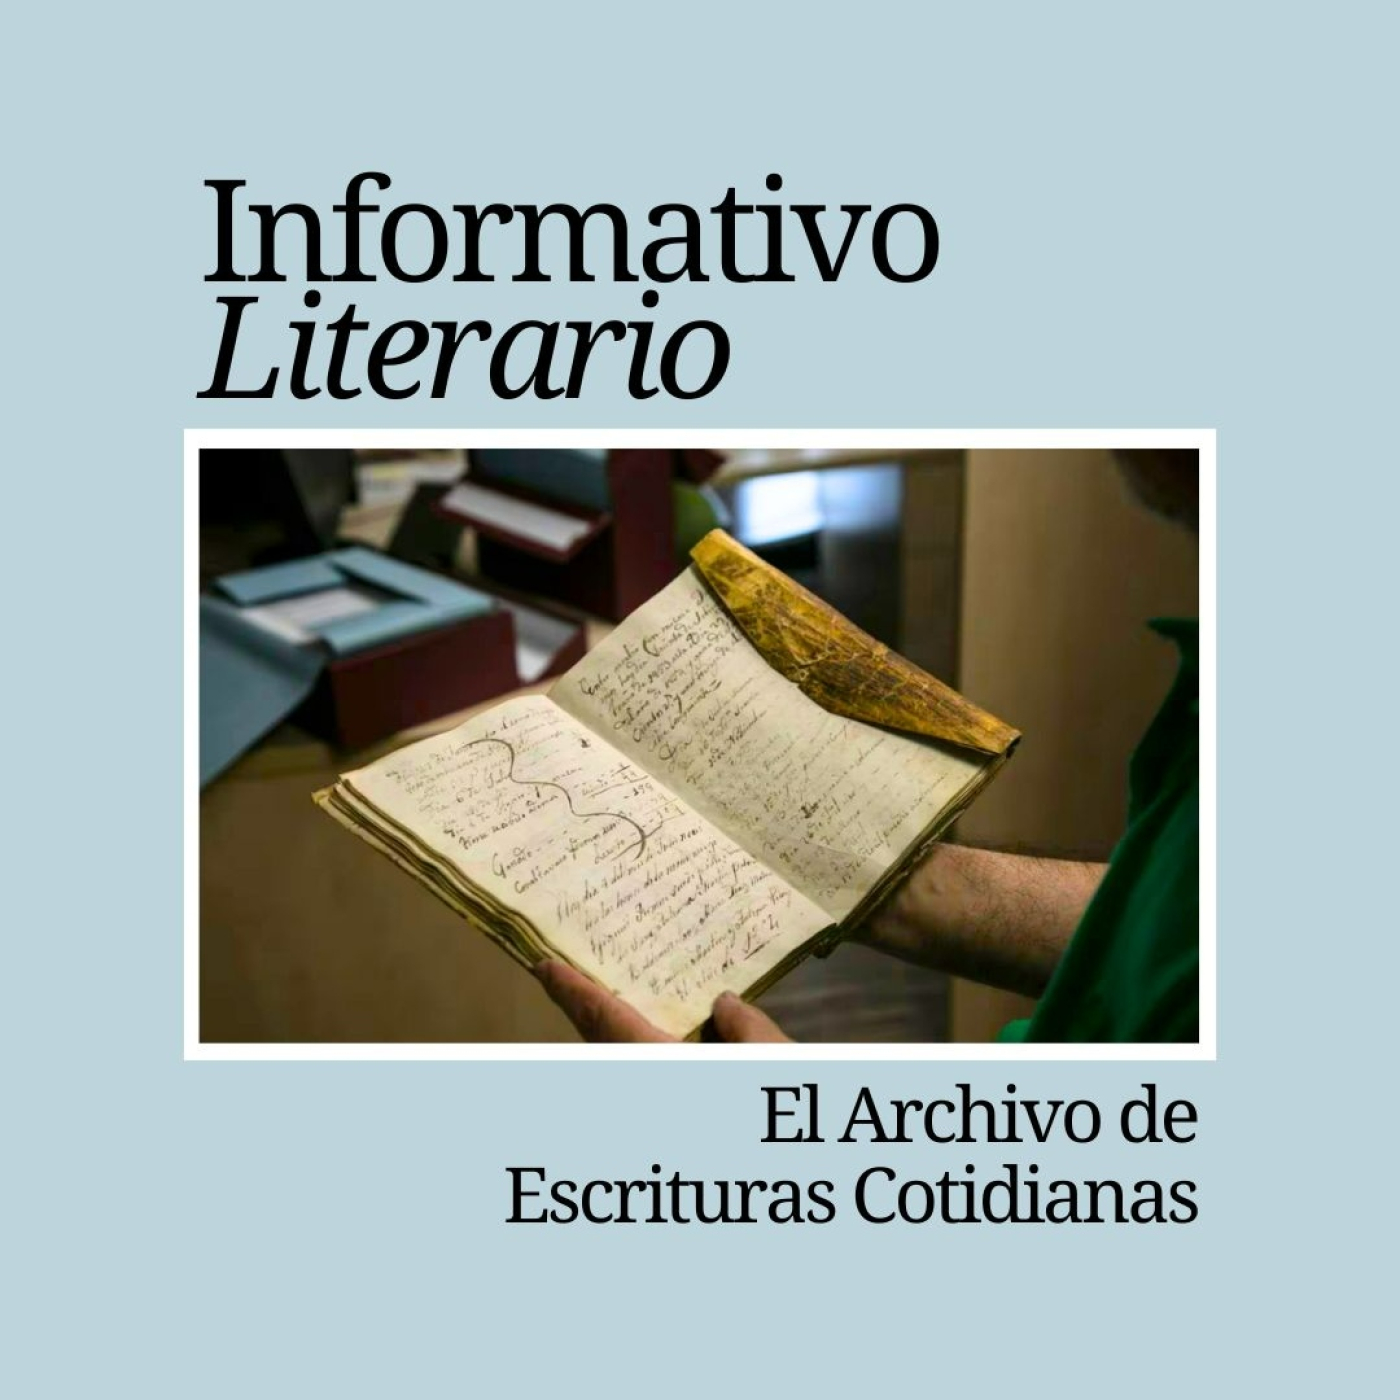 Informativo Literario. El Archivo de Escrituras Cotidianas